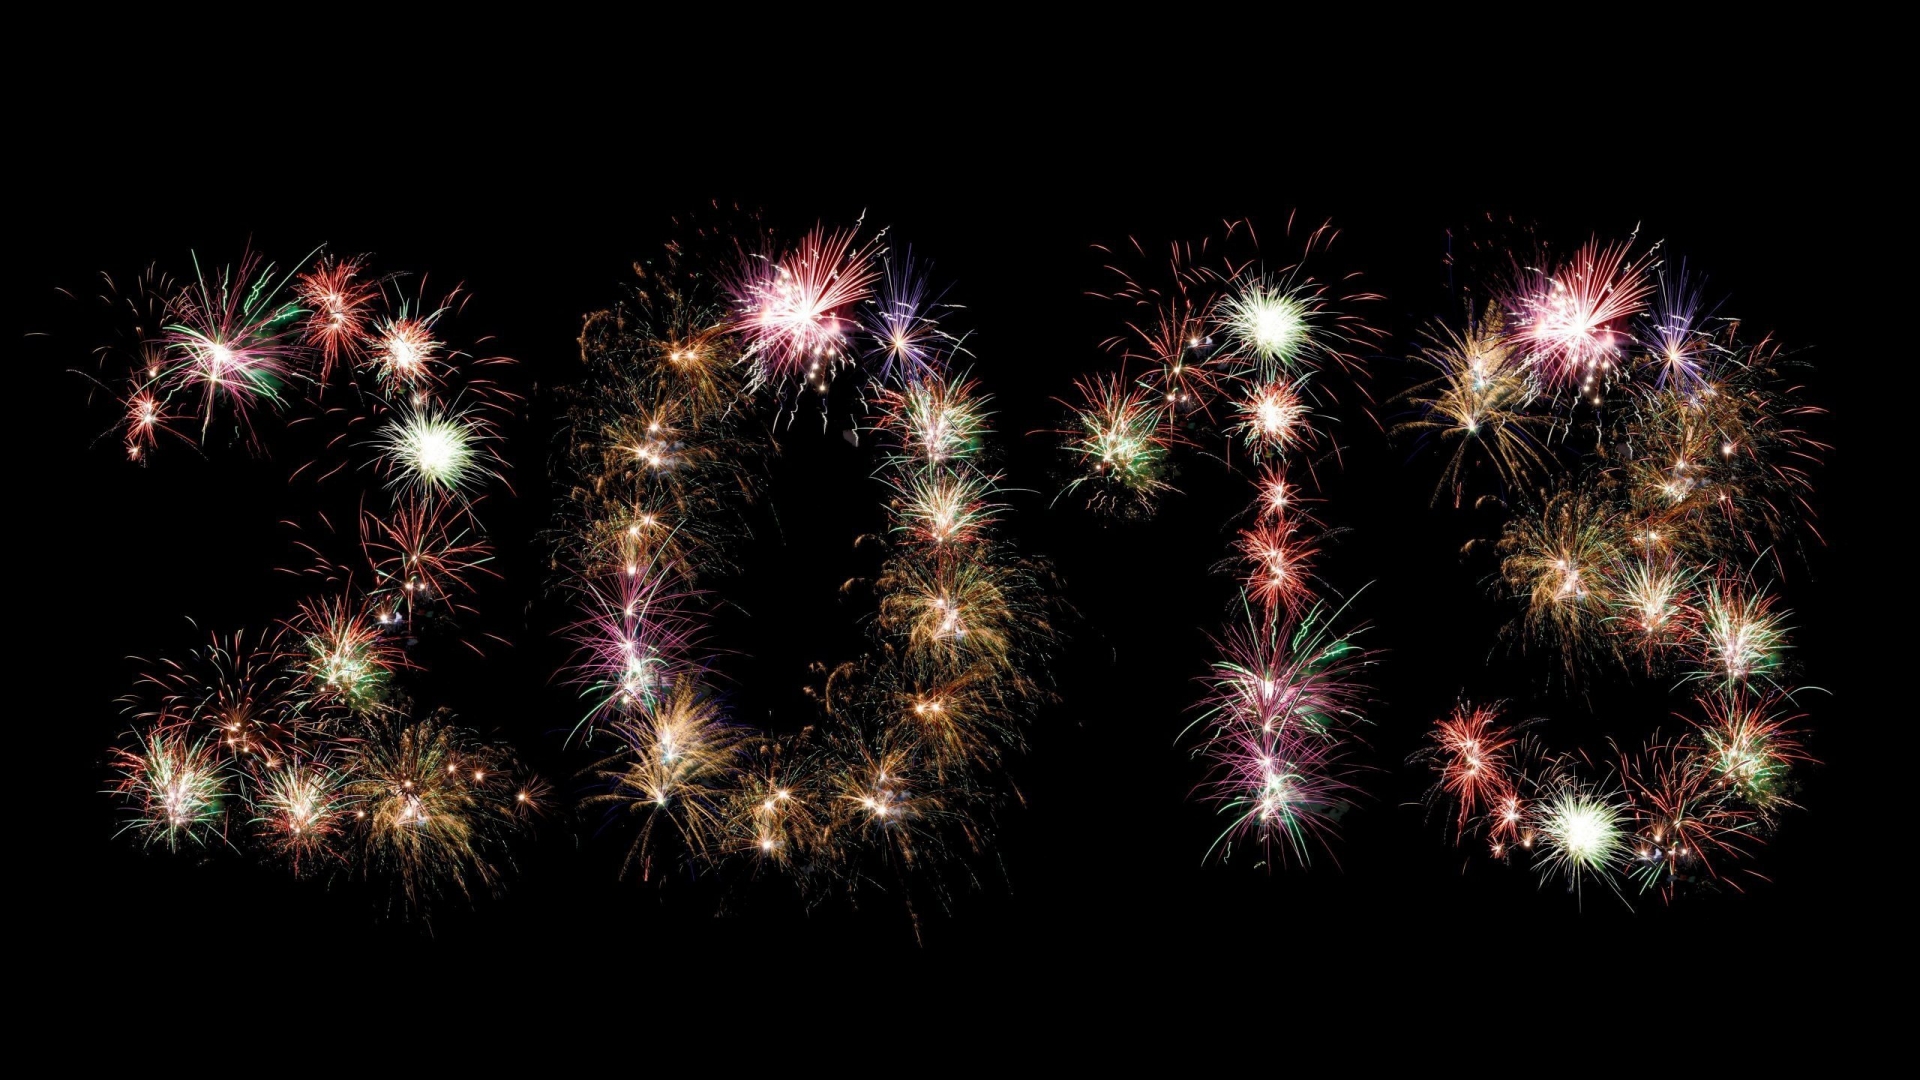 2013 Fireworks for 1920 x 1080 HDTV 1080p resolution